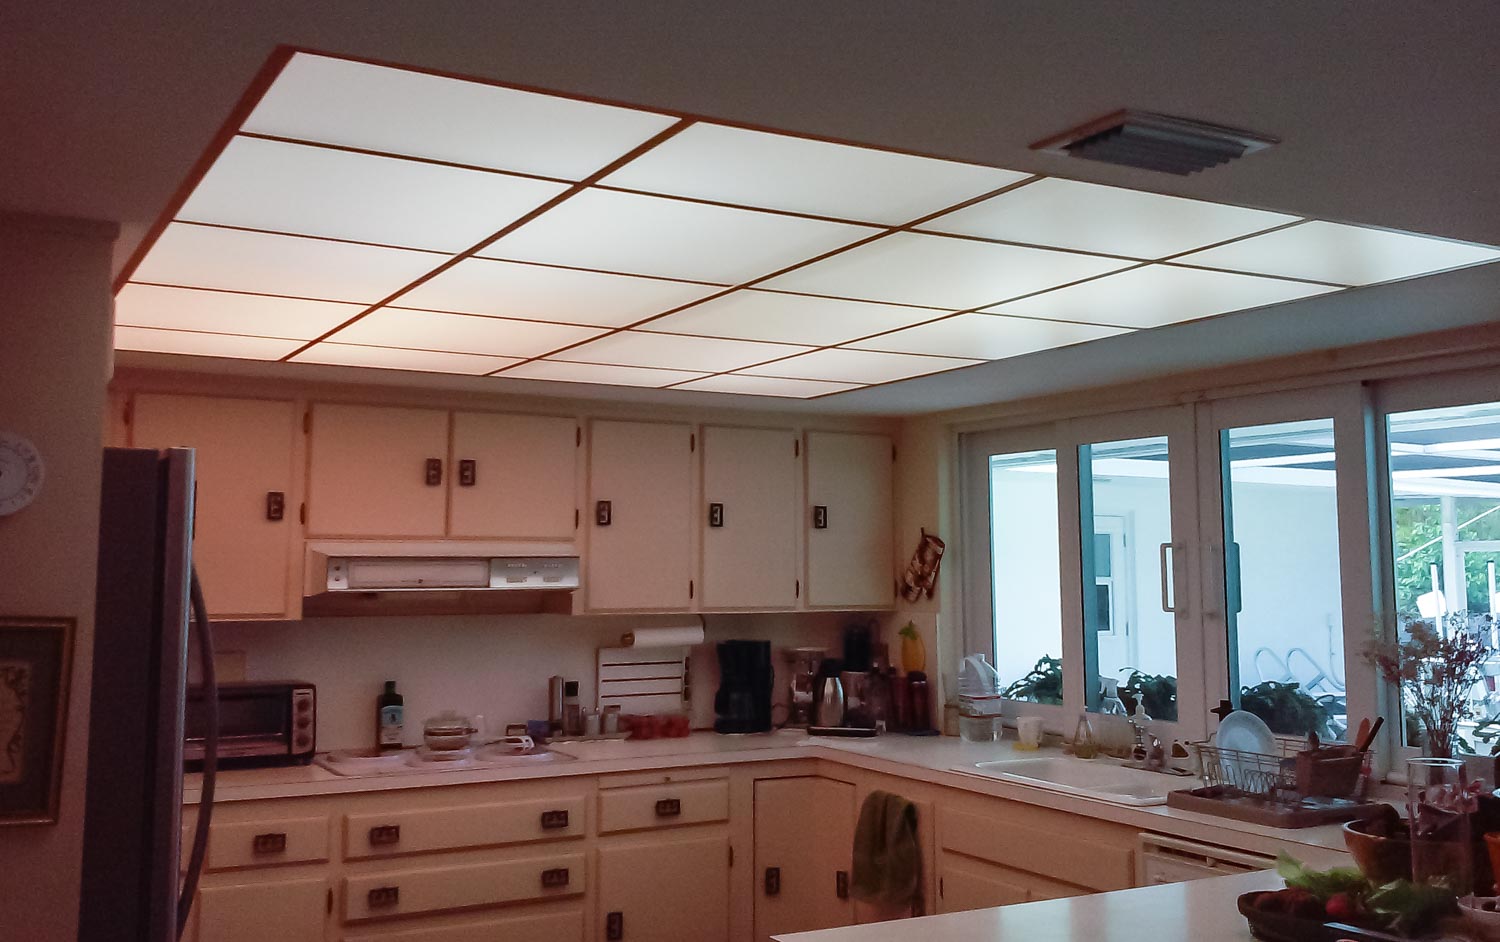 acrylic kitchen lighting covers